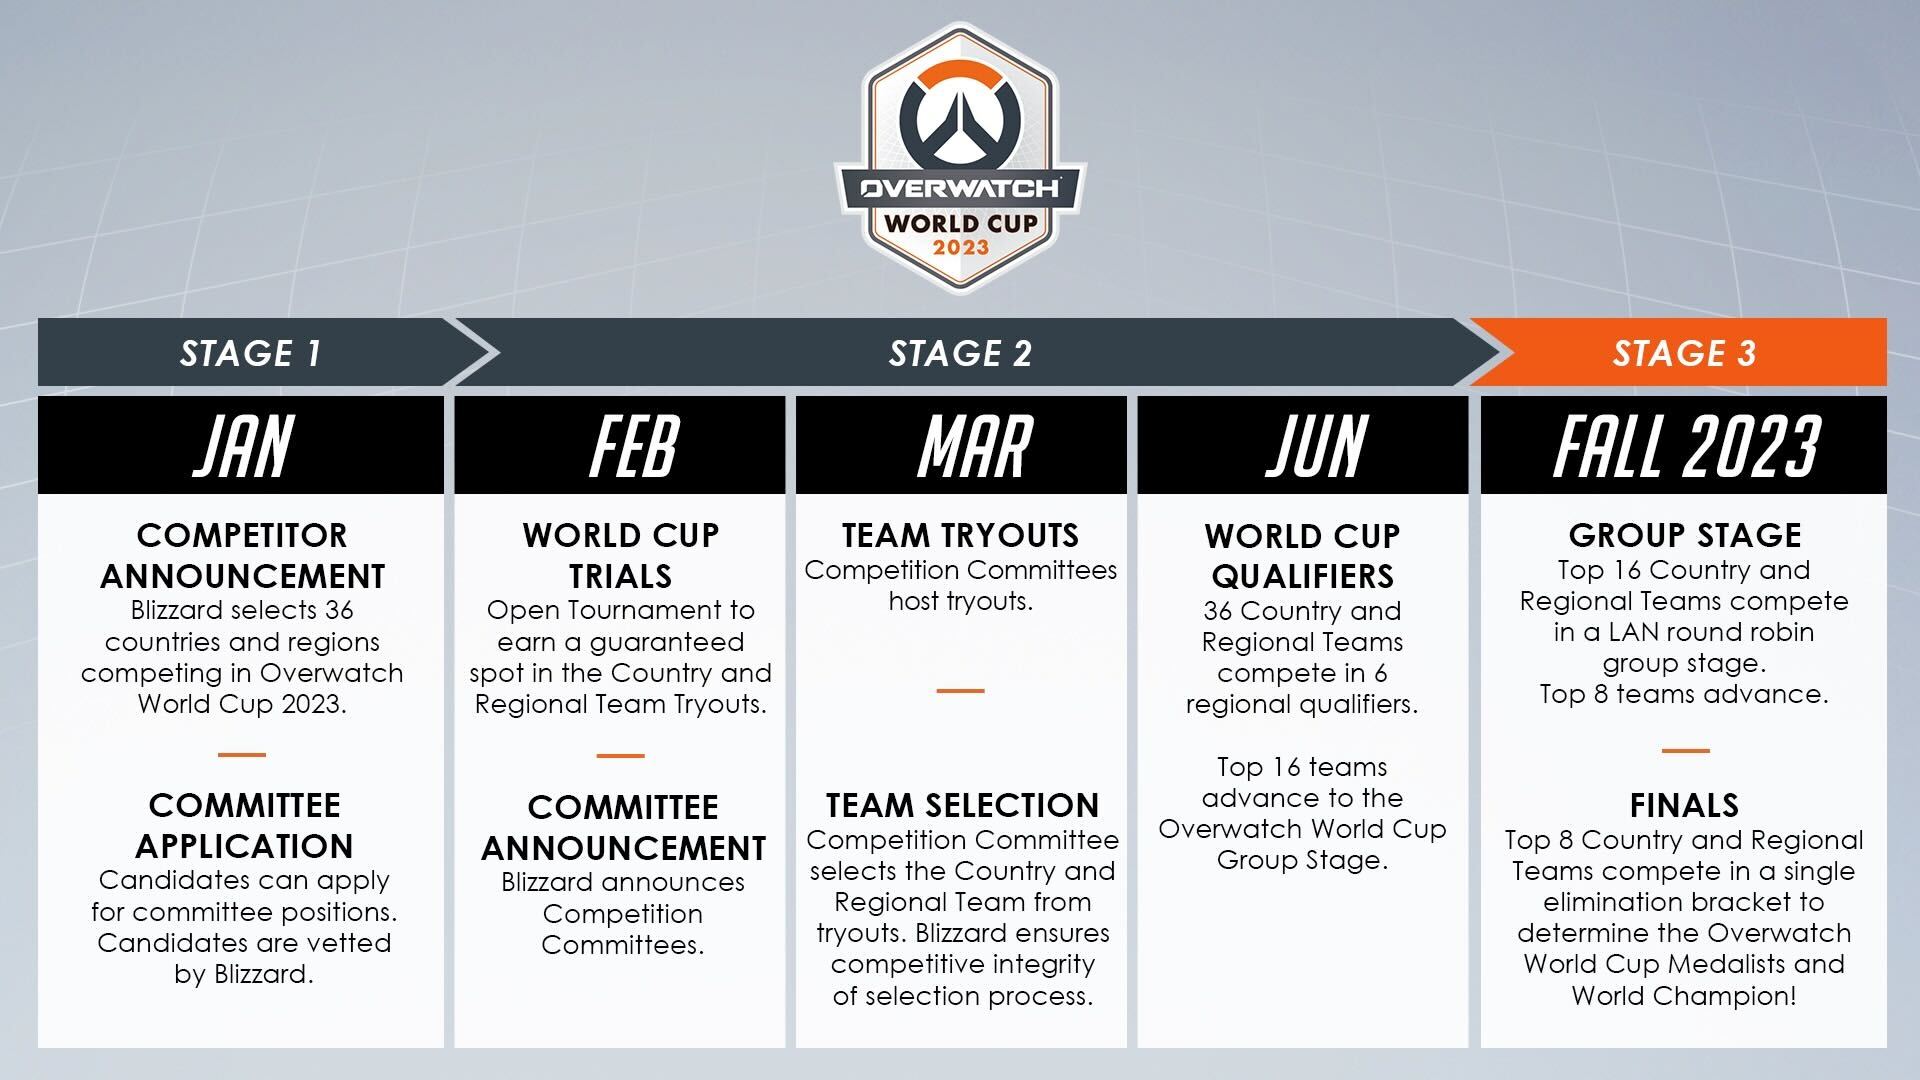 Overwatch World Cup 2018: seleção brasileira é eliminada na fase de grupos